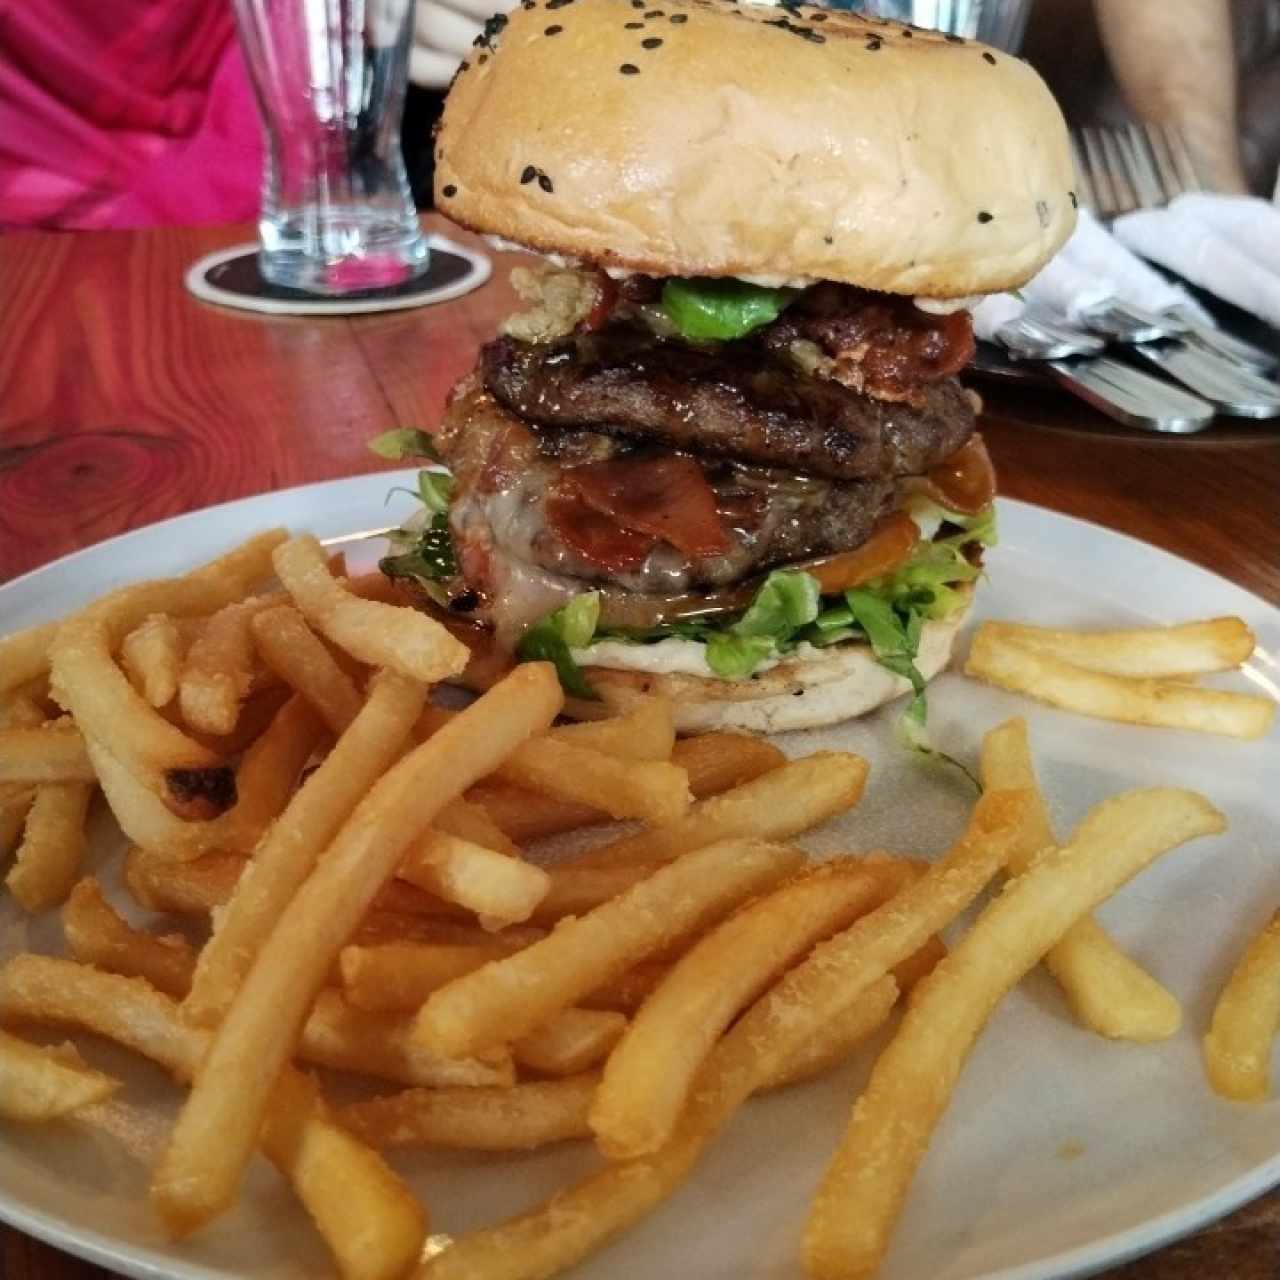 Jack double passion burger 